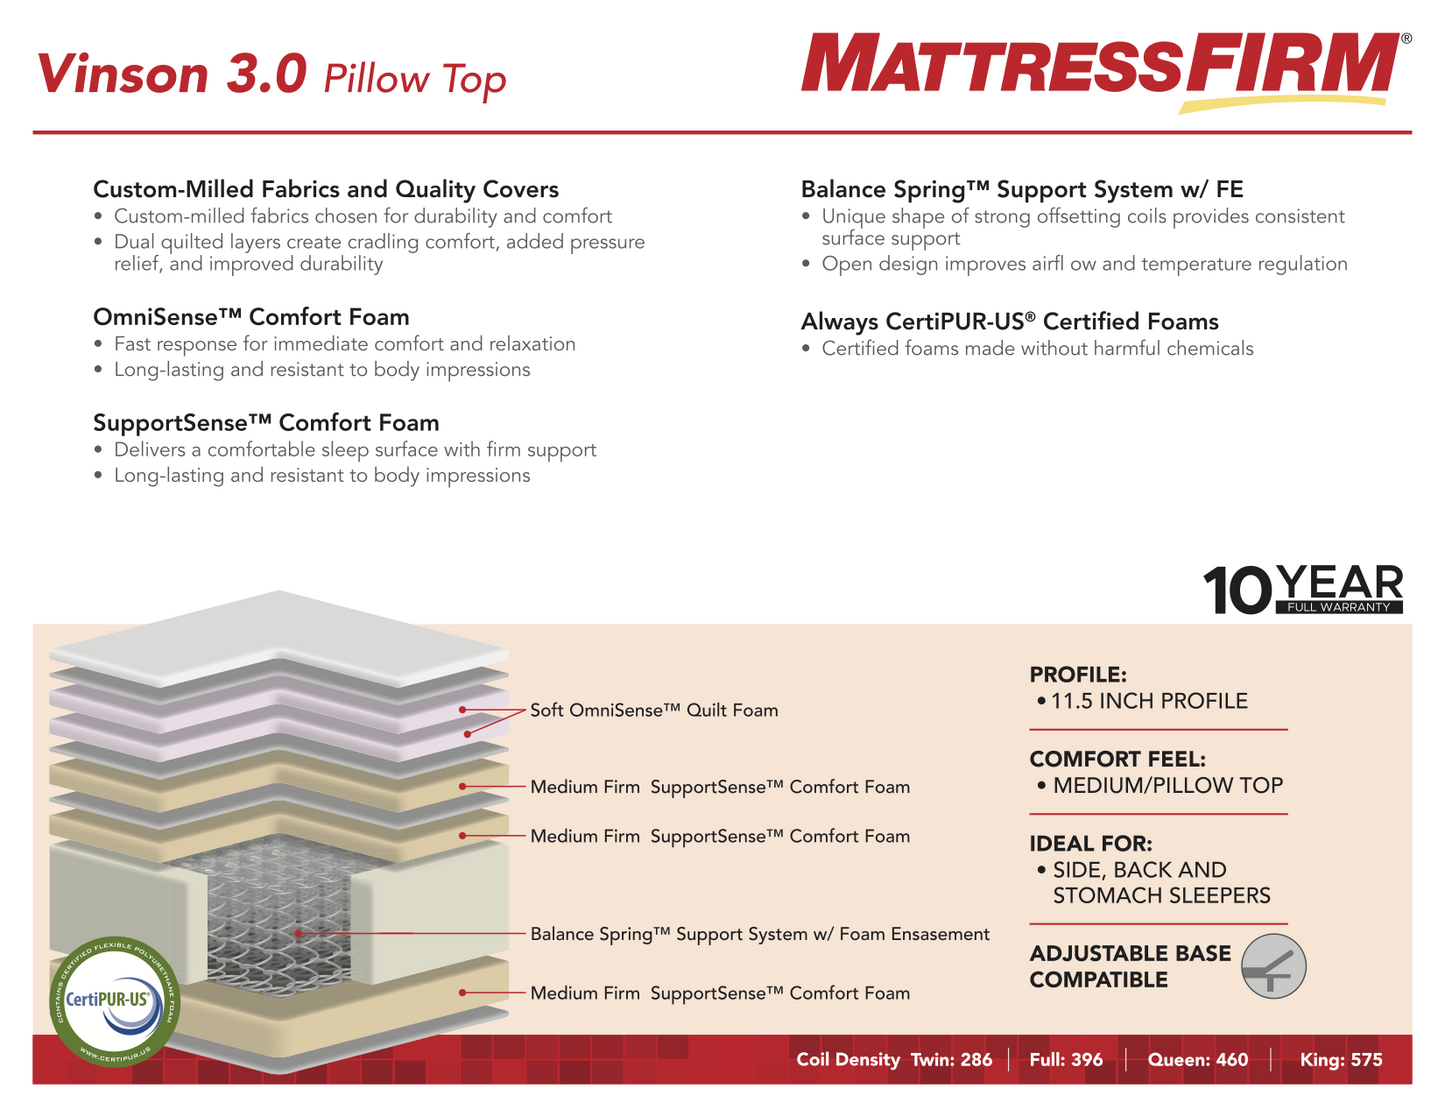 Vinson 3.0 Pillow Top Mattress